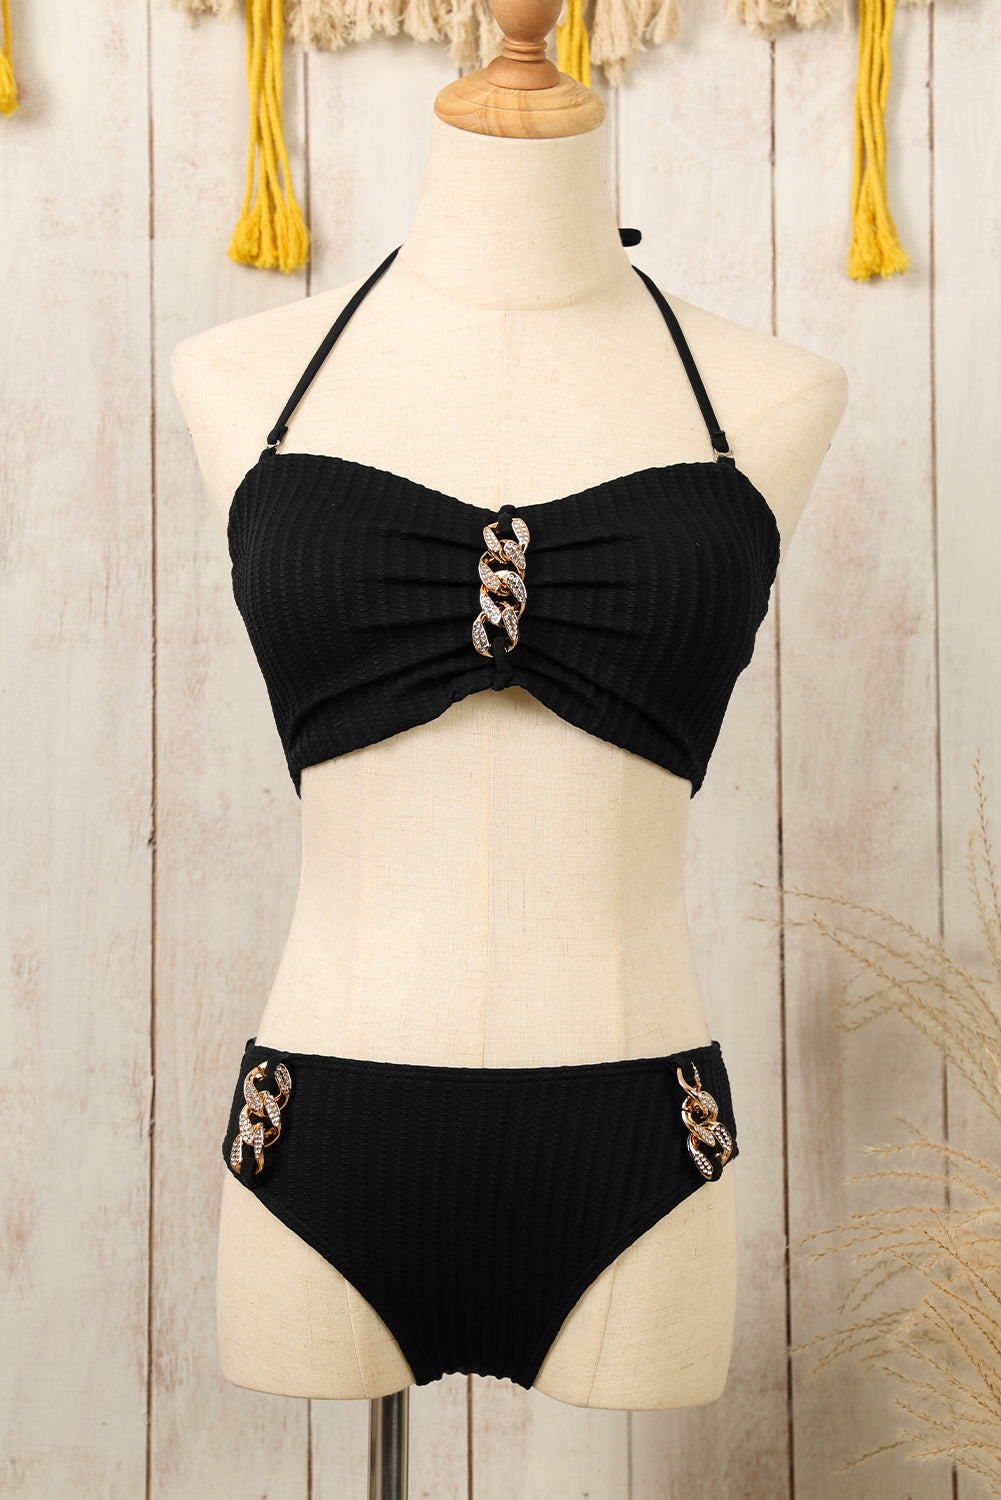 Črni bikini komplet z obročki in teksturiranimi ovratniki